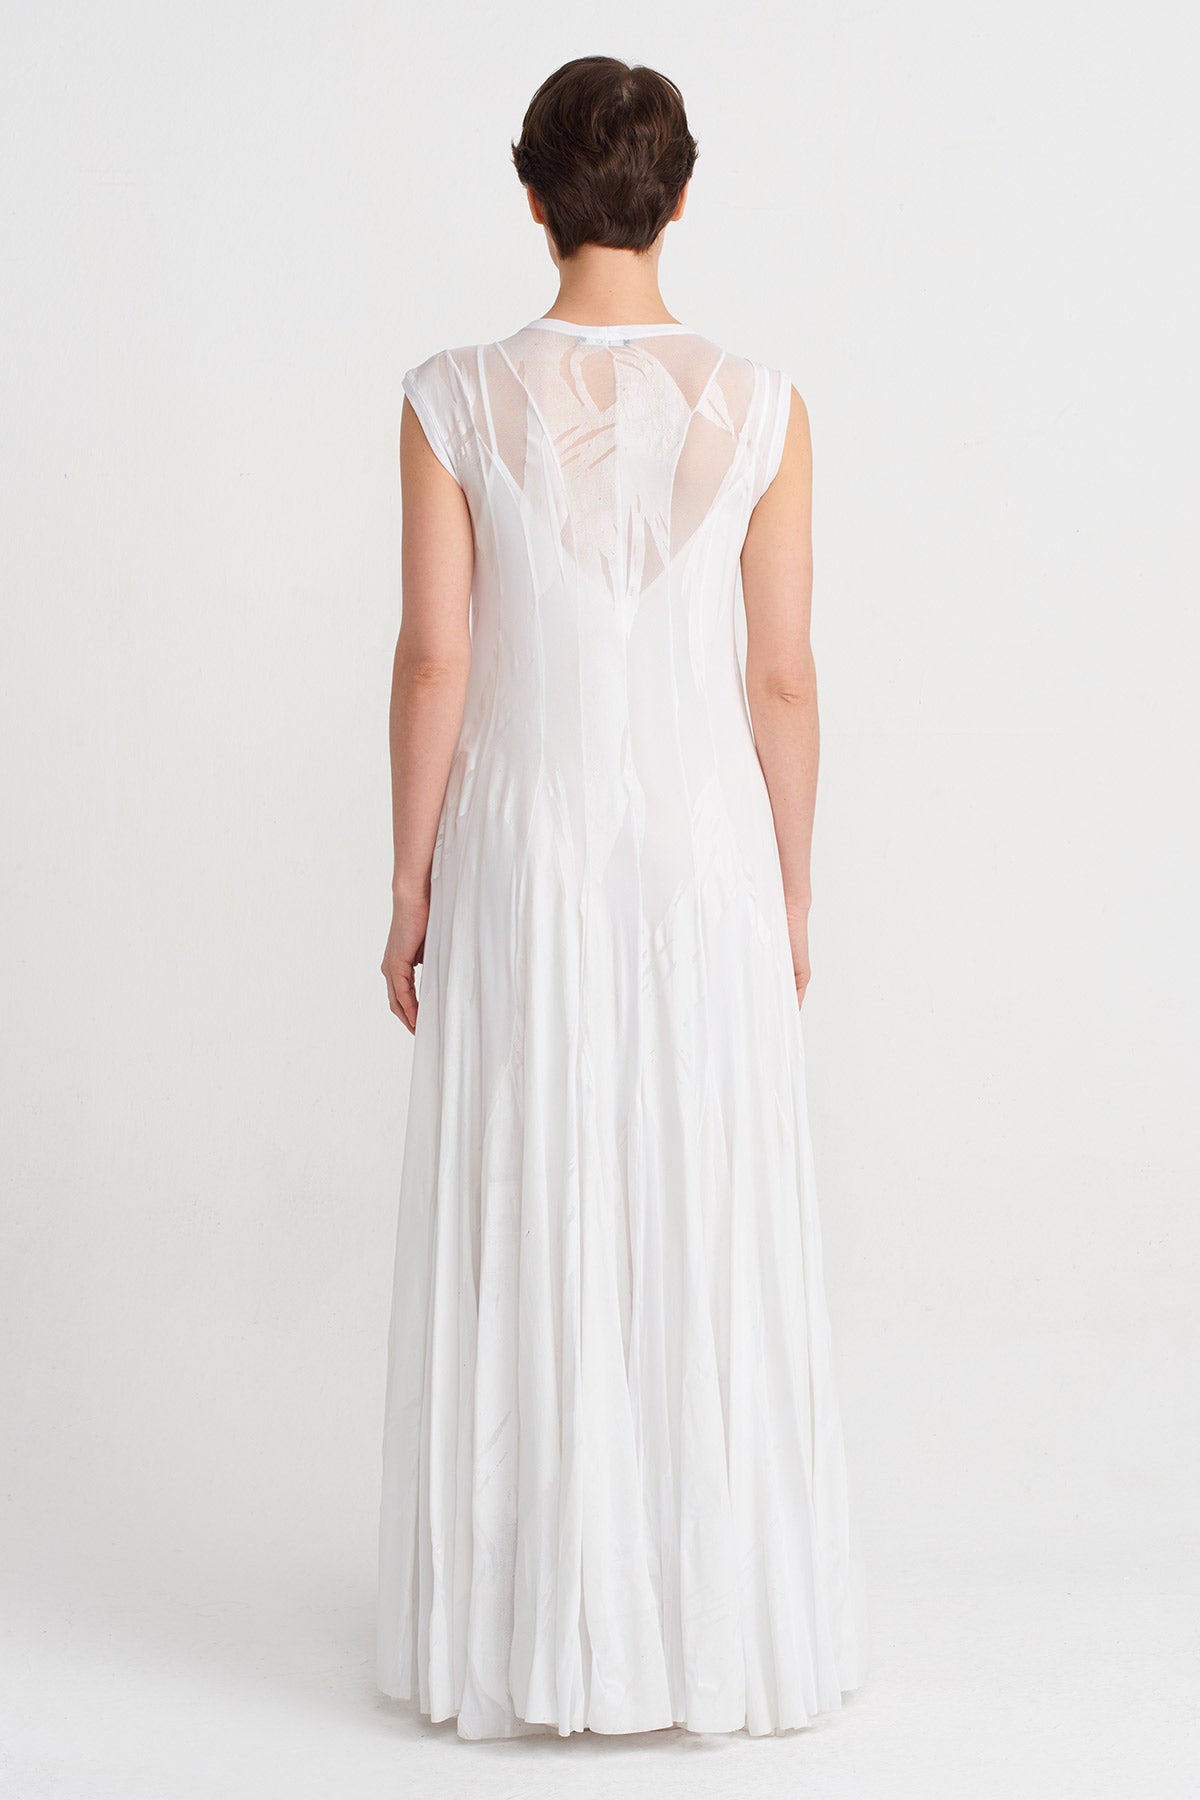 Kırık Beyaz Tona Ton Baskı Desenli Uzun Şık Elbise-Y244014132